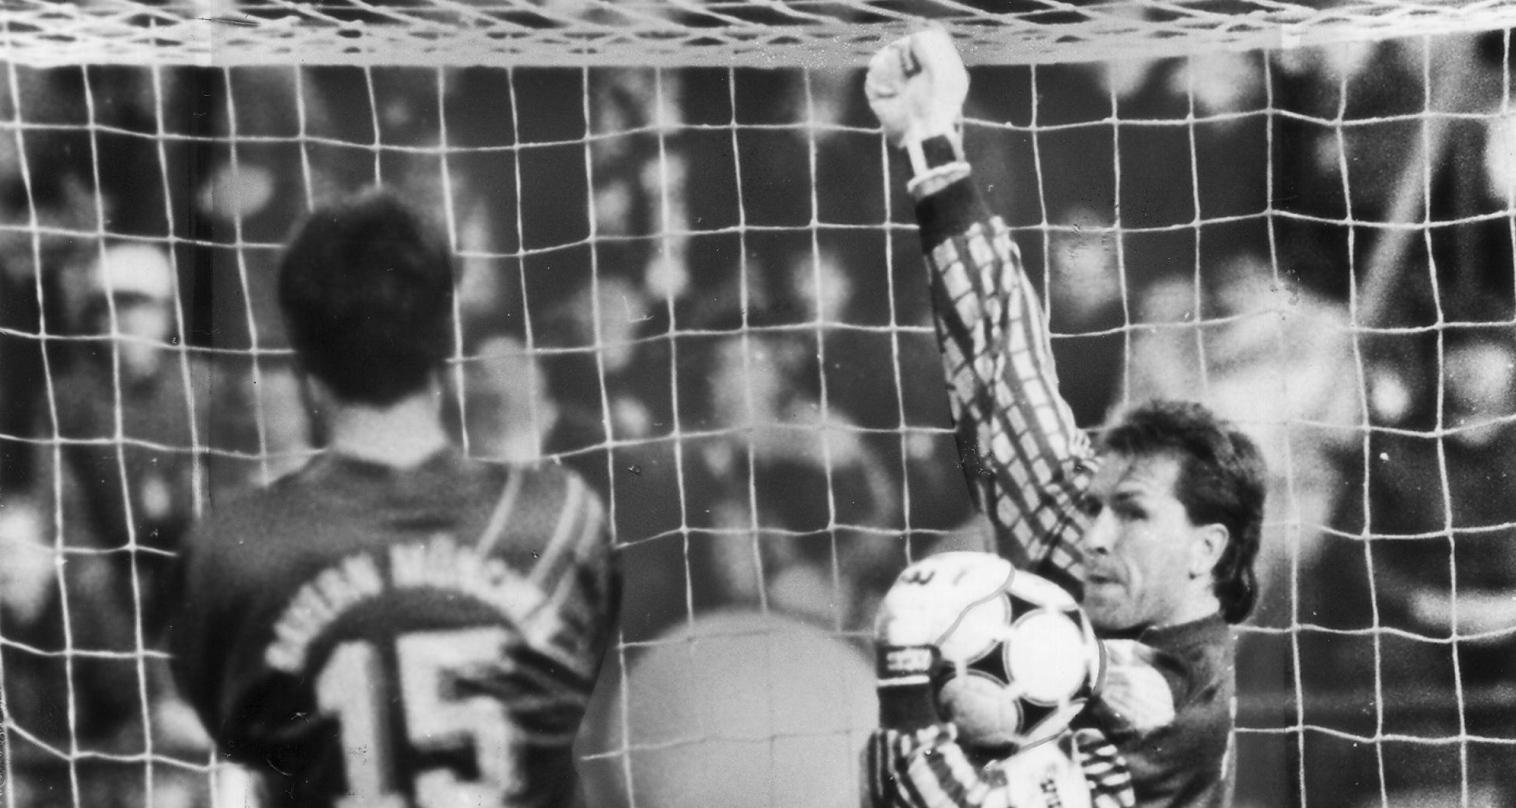 Seht her, ich hab's geschafft: Andreas Köpke hält den Elfmeter von Stefan Effenberg im Münchner Olympiastadion 1992. Wenige Minuten später siegt der Club mit 3:1.